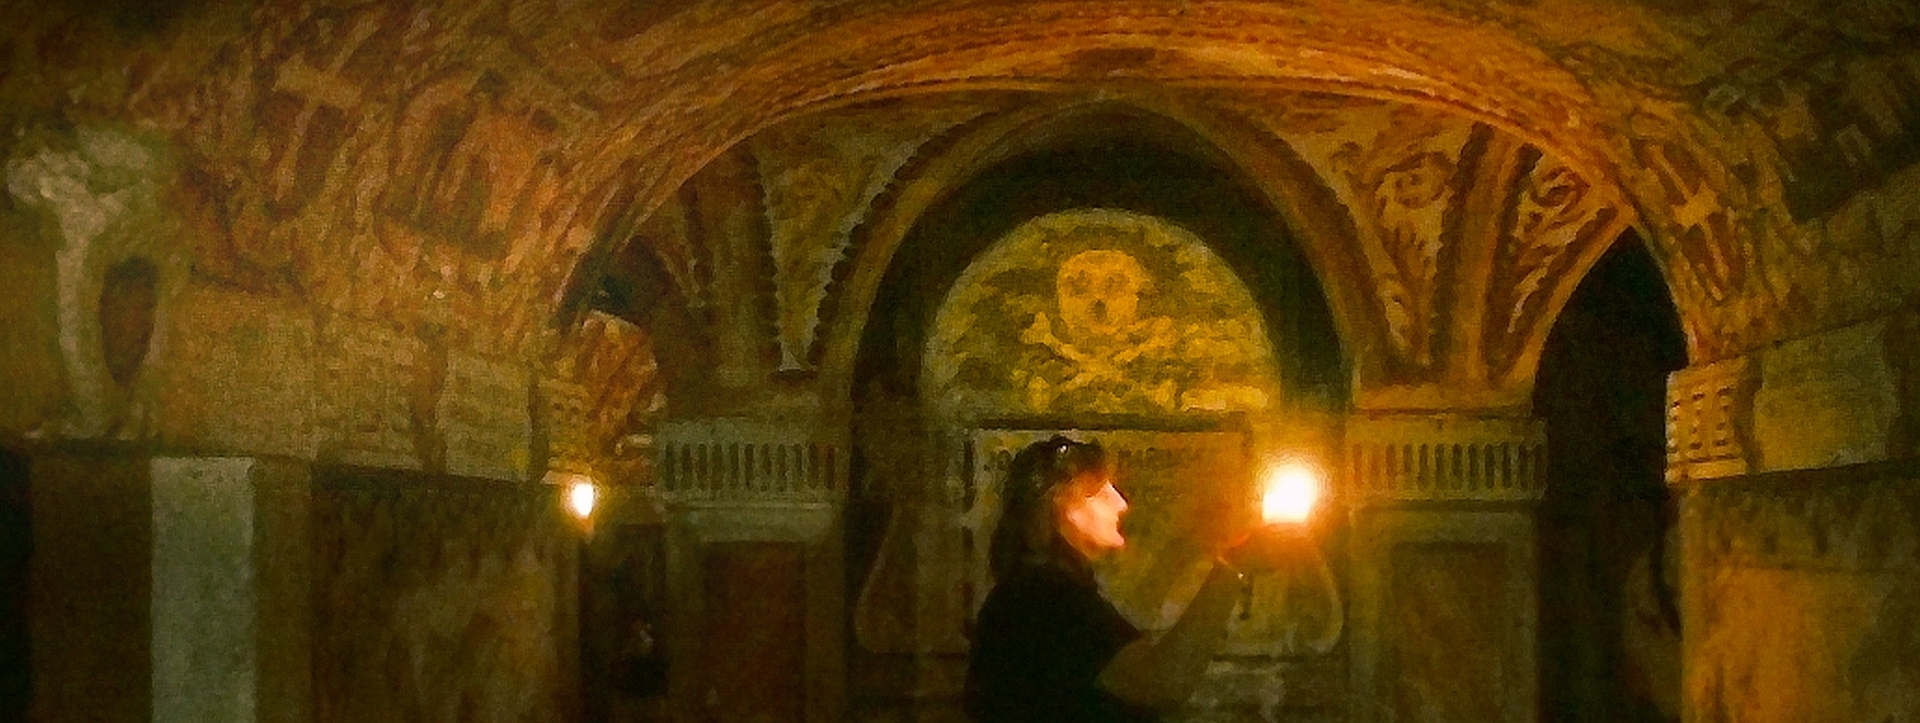 Ein freimaurerisches Motiv in einer Krypta in Santa Croce